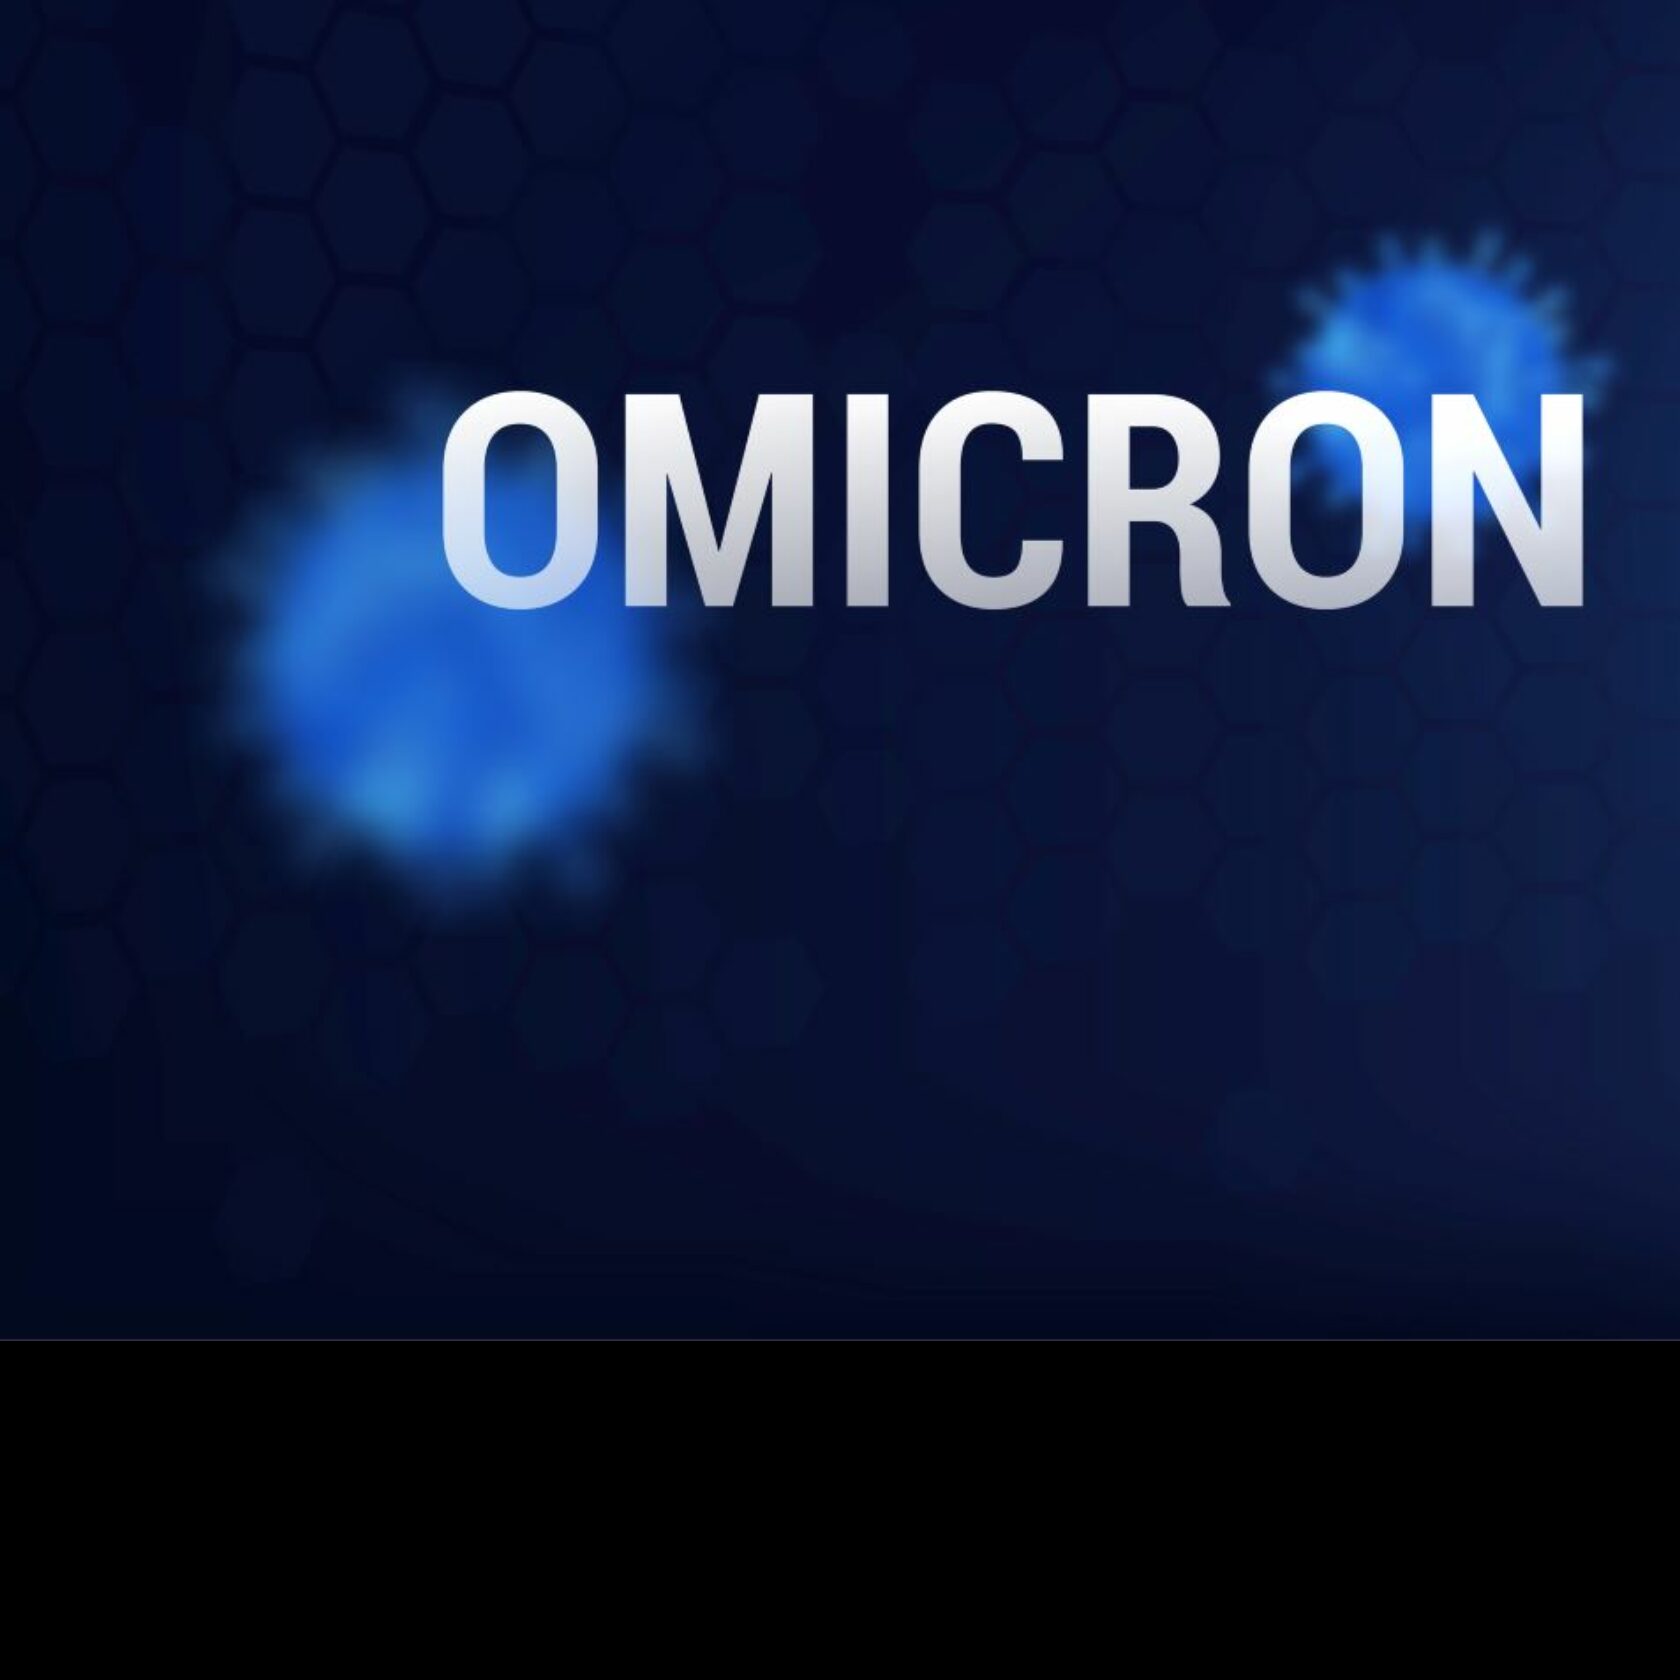 Wort Omicron vor dunklem Hintergrund und schematische Darstellung des Coronavirus